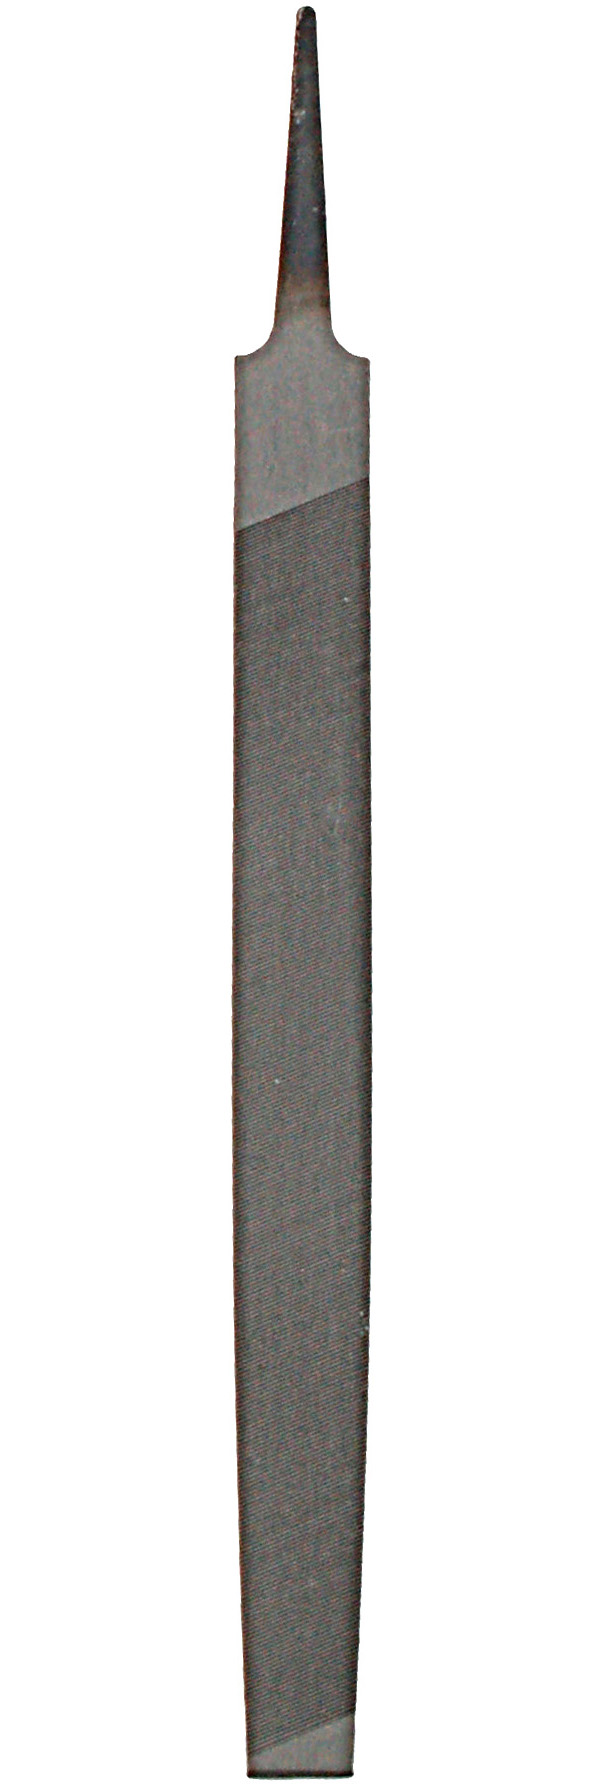 Zenport Sharpening File AGF200 Escofina, Mill Lima Bastarda, de 8 pulgadas (200 mm), para afilar cuchillos y tijeras de podar